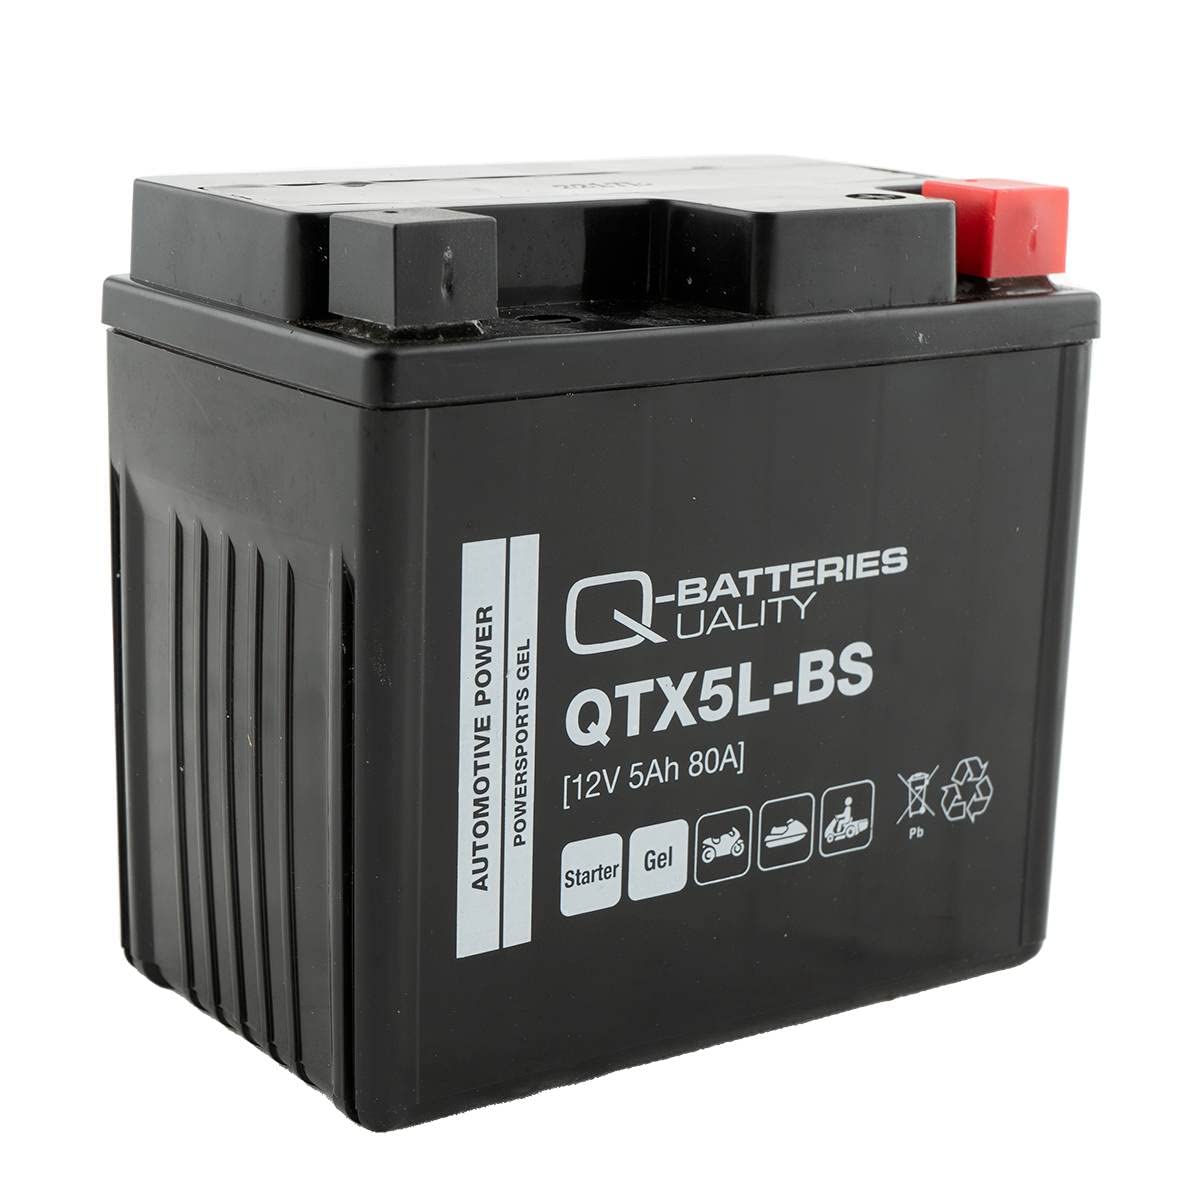 Q-Batteries QTX5L-BS Gel Motorradbatterie 12V 4,5Ah 70A QTX5L-4 50412 von Q-Batteries